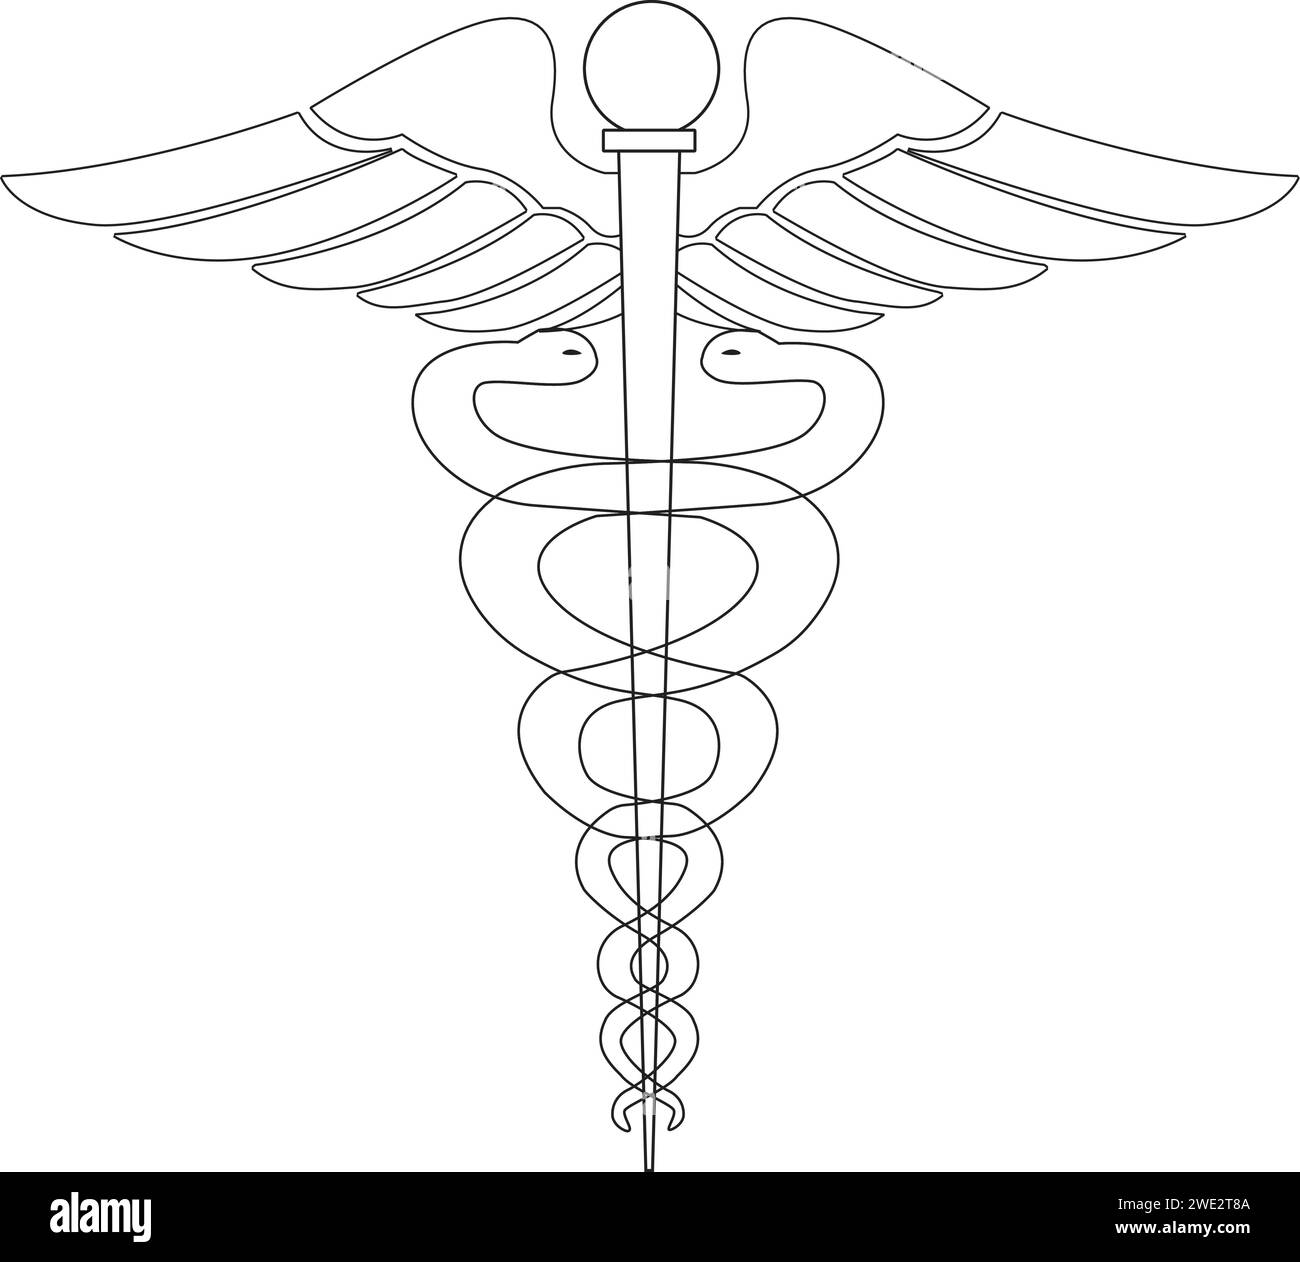 Medical sign, Medical symbol, Medical Snake Caduceus Logo, Caduceus sign, caduceus - medical symbol, Snake medical icon outline Stock Vector